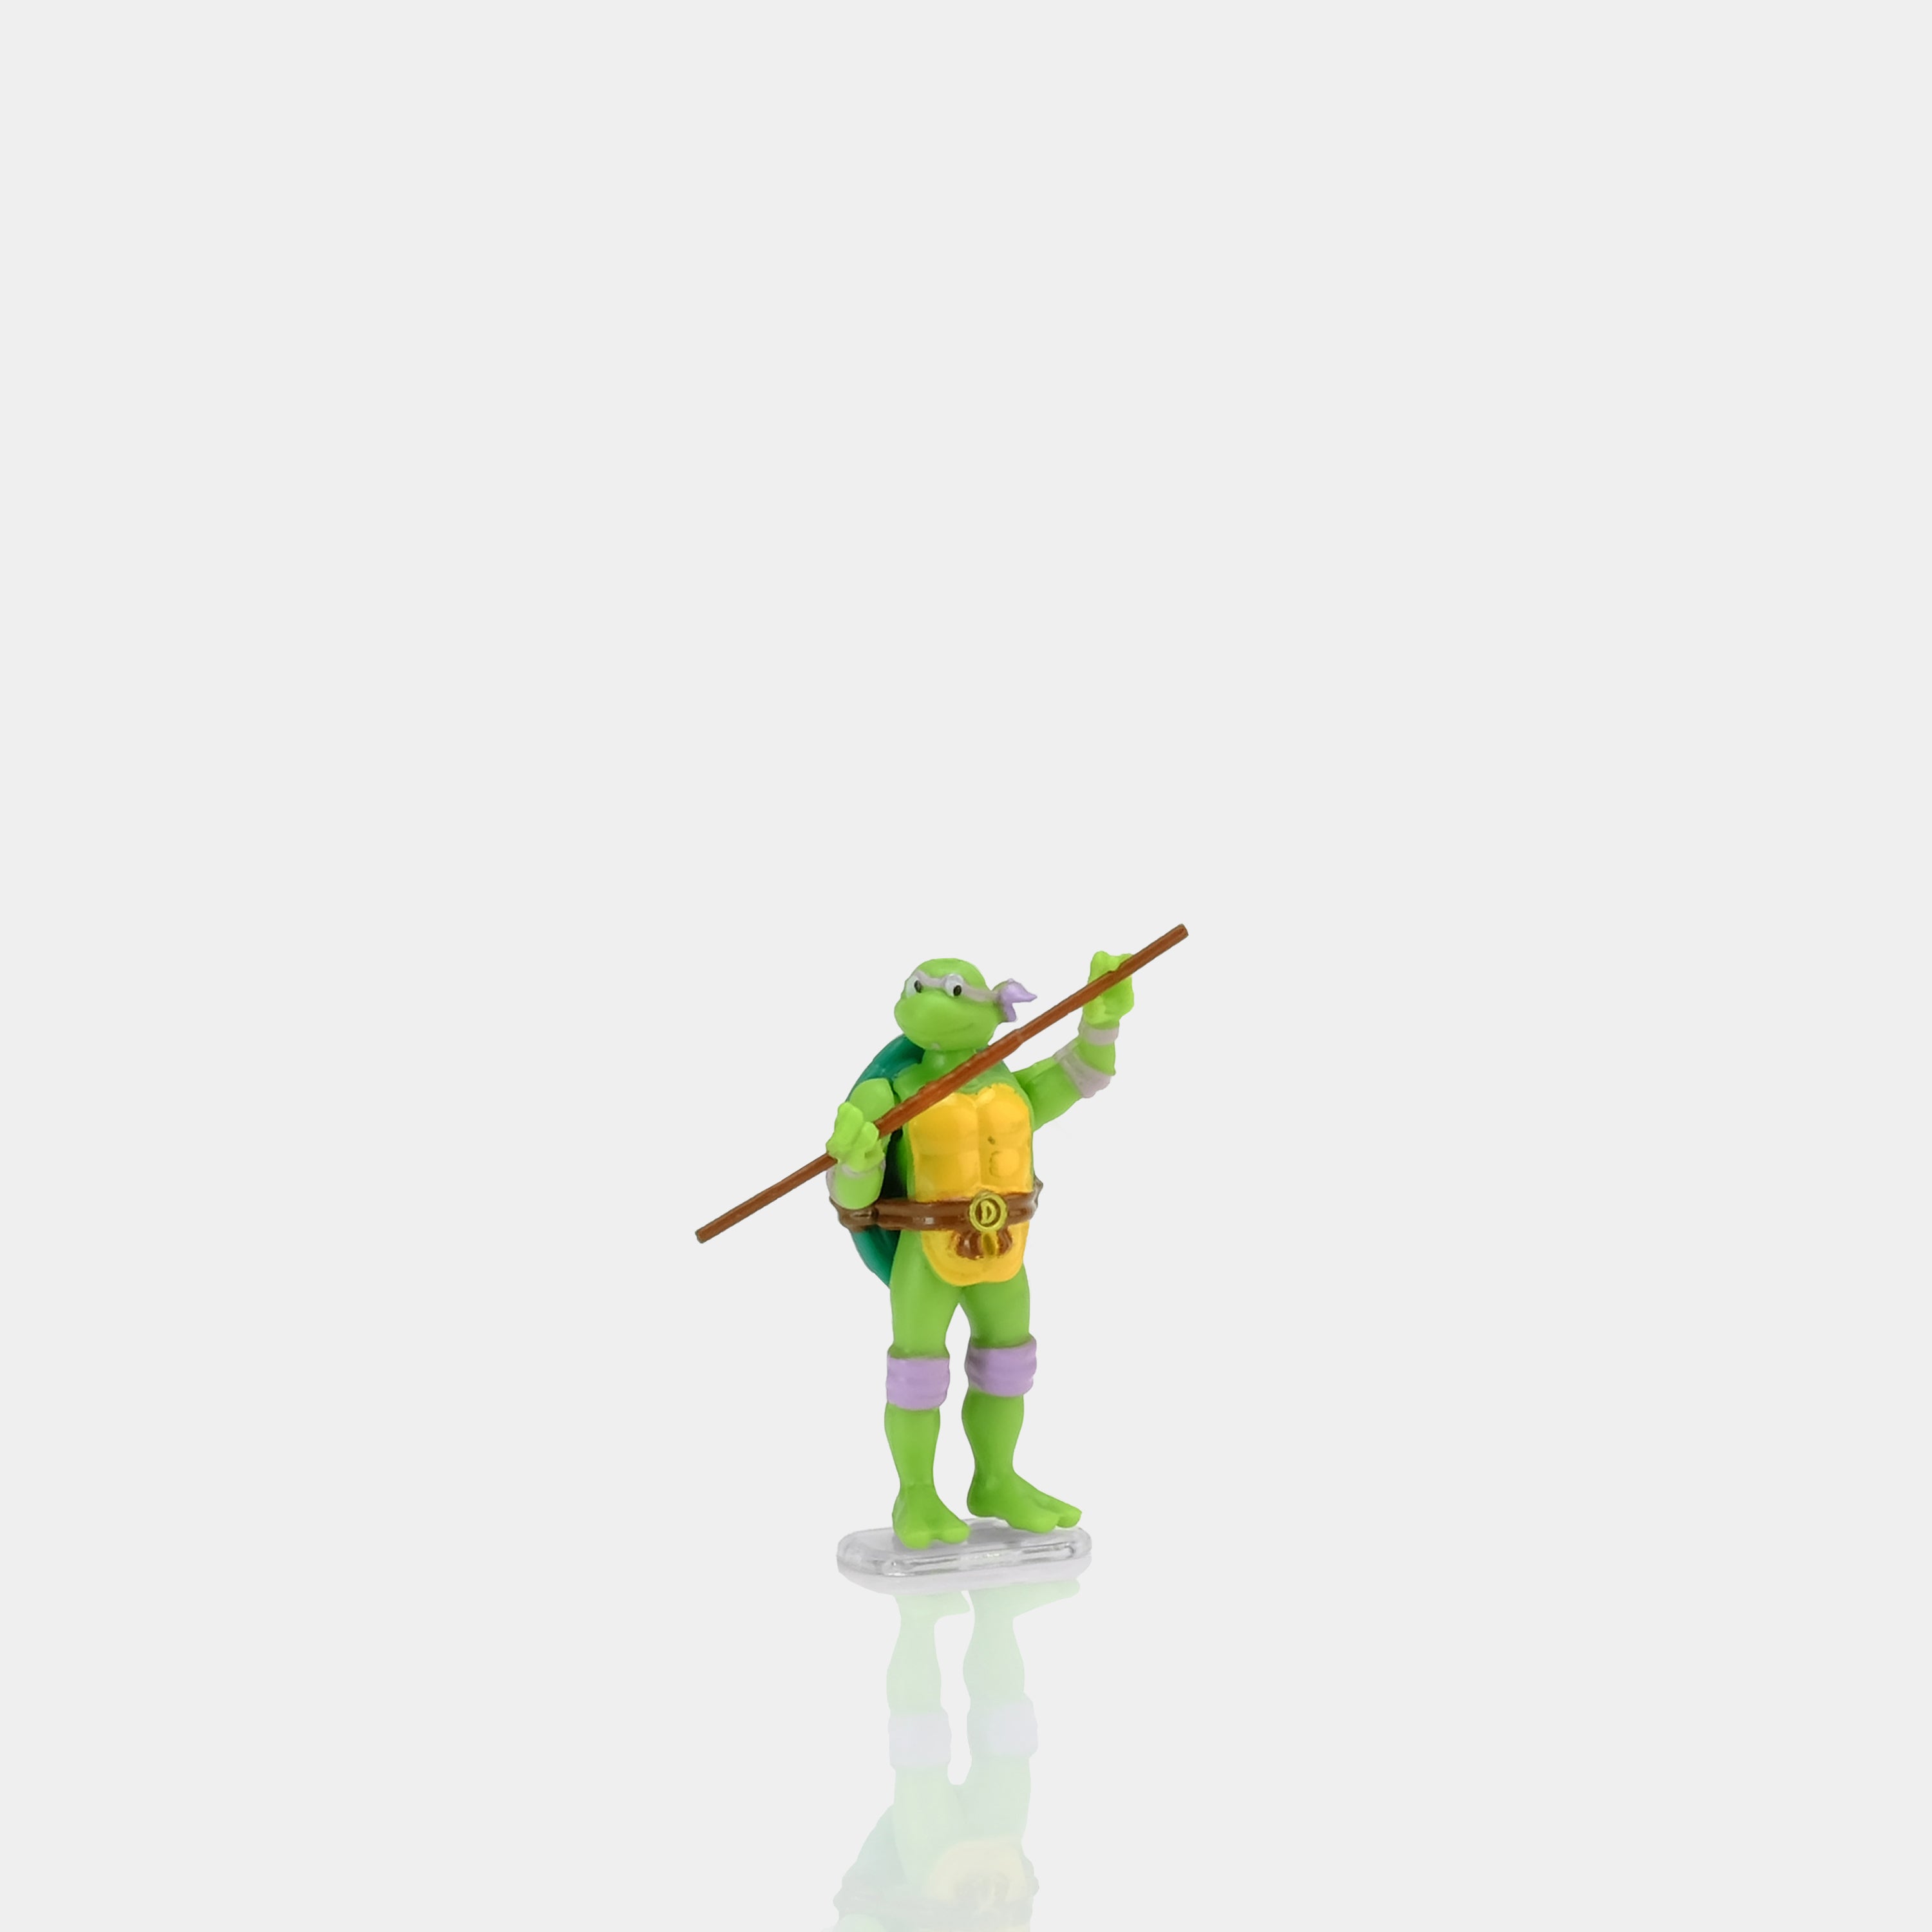 World's Smallest Micro Action Figures Teenage Mutant Ninja Turtles - Donatello